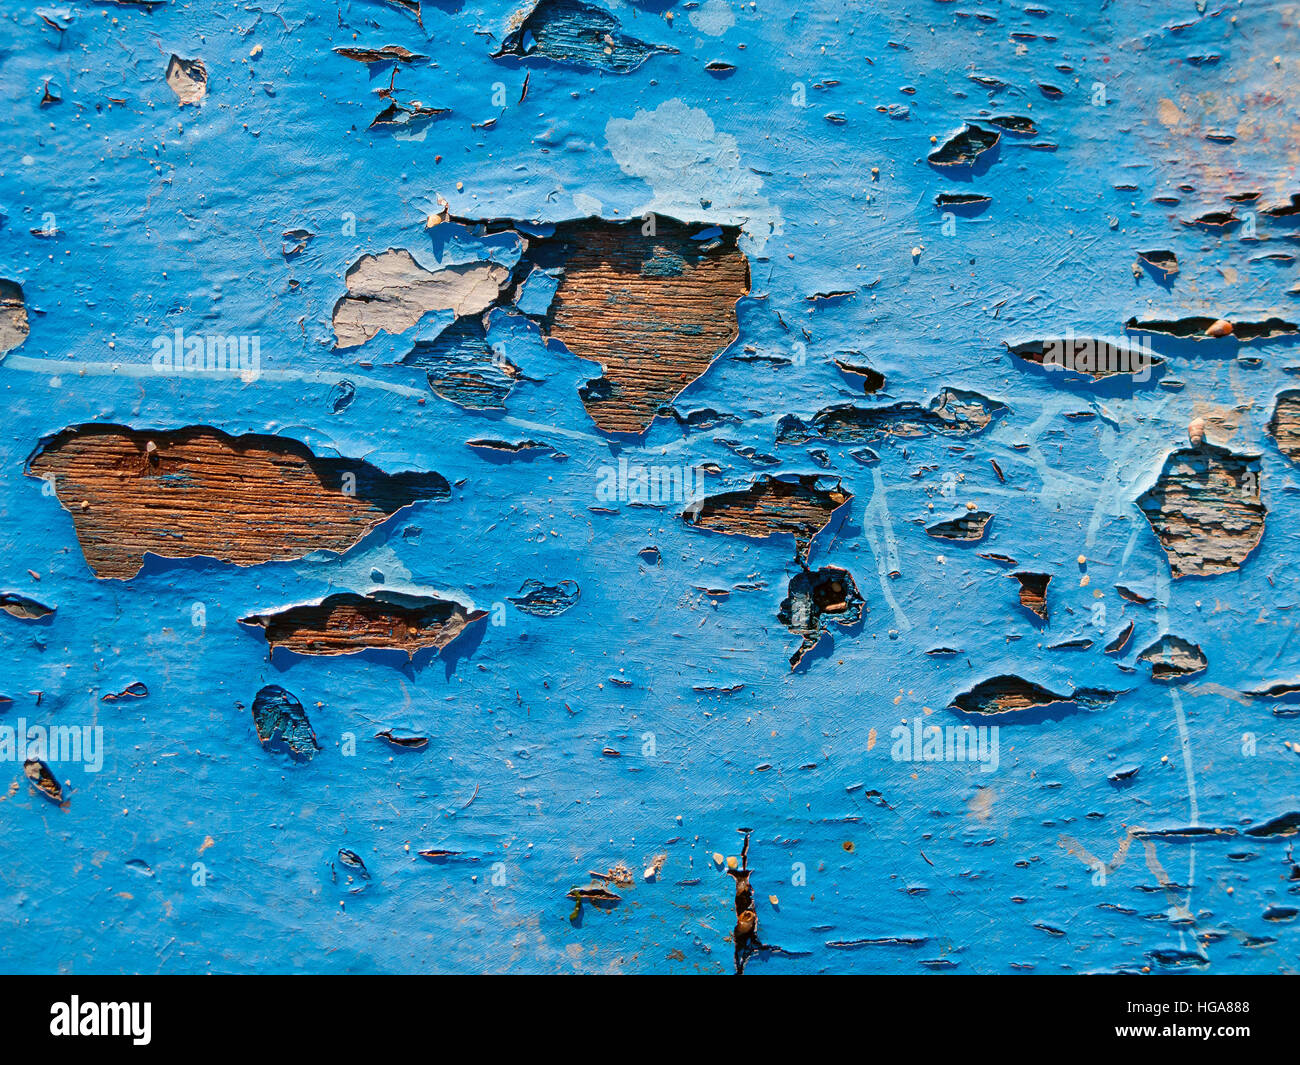 L'écaillage de la peinture sur panneaux de bois d'une texture de fond de coque de bateau Banque D'Images